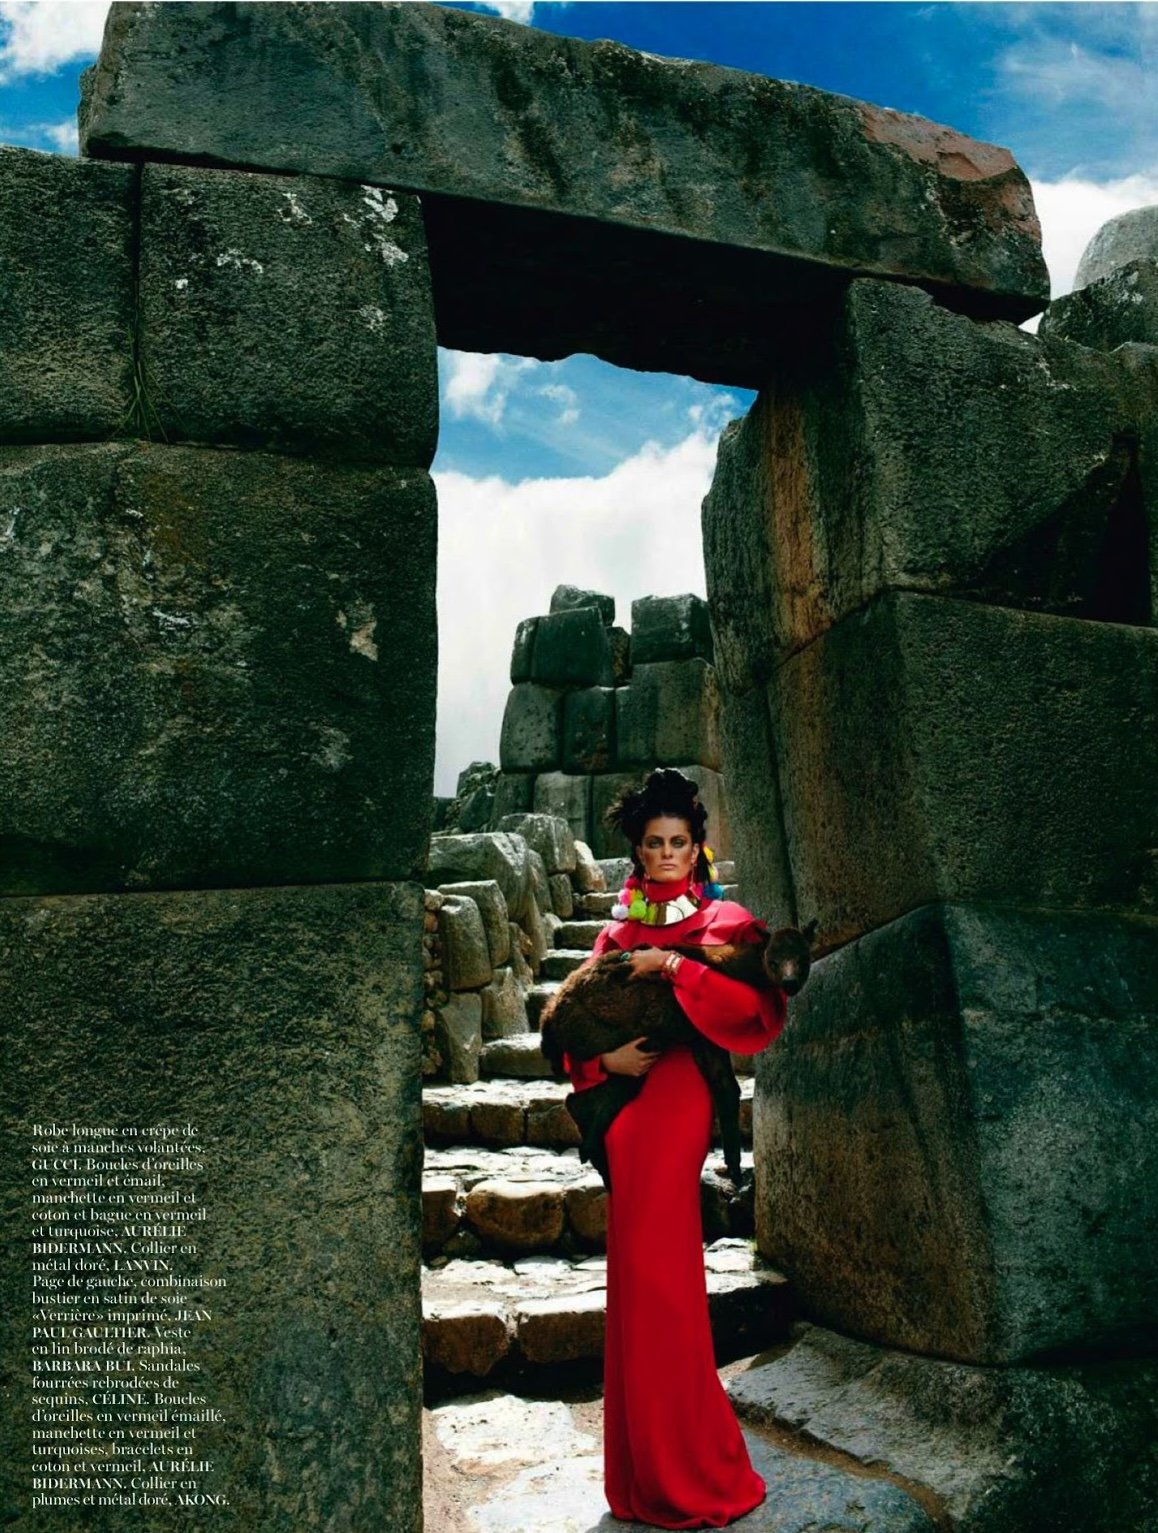 Inca-Style-by-Mario-Testino-Vogue-Paris-April-2013-9.jpeg